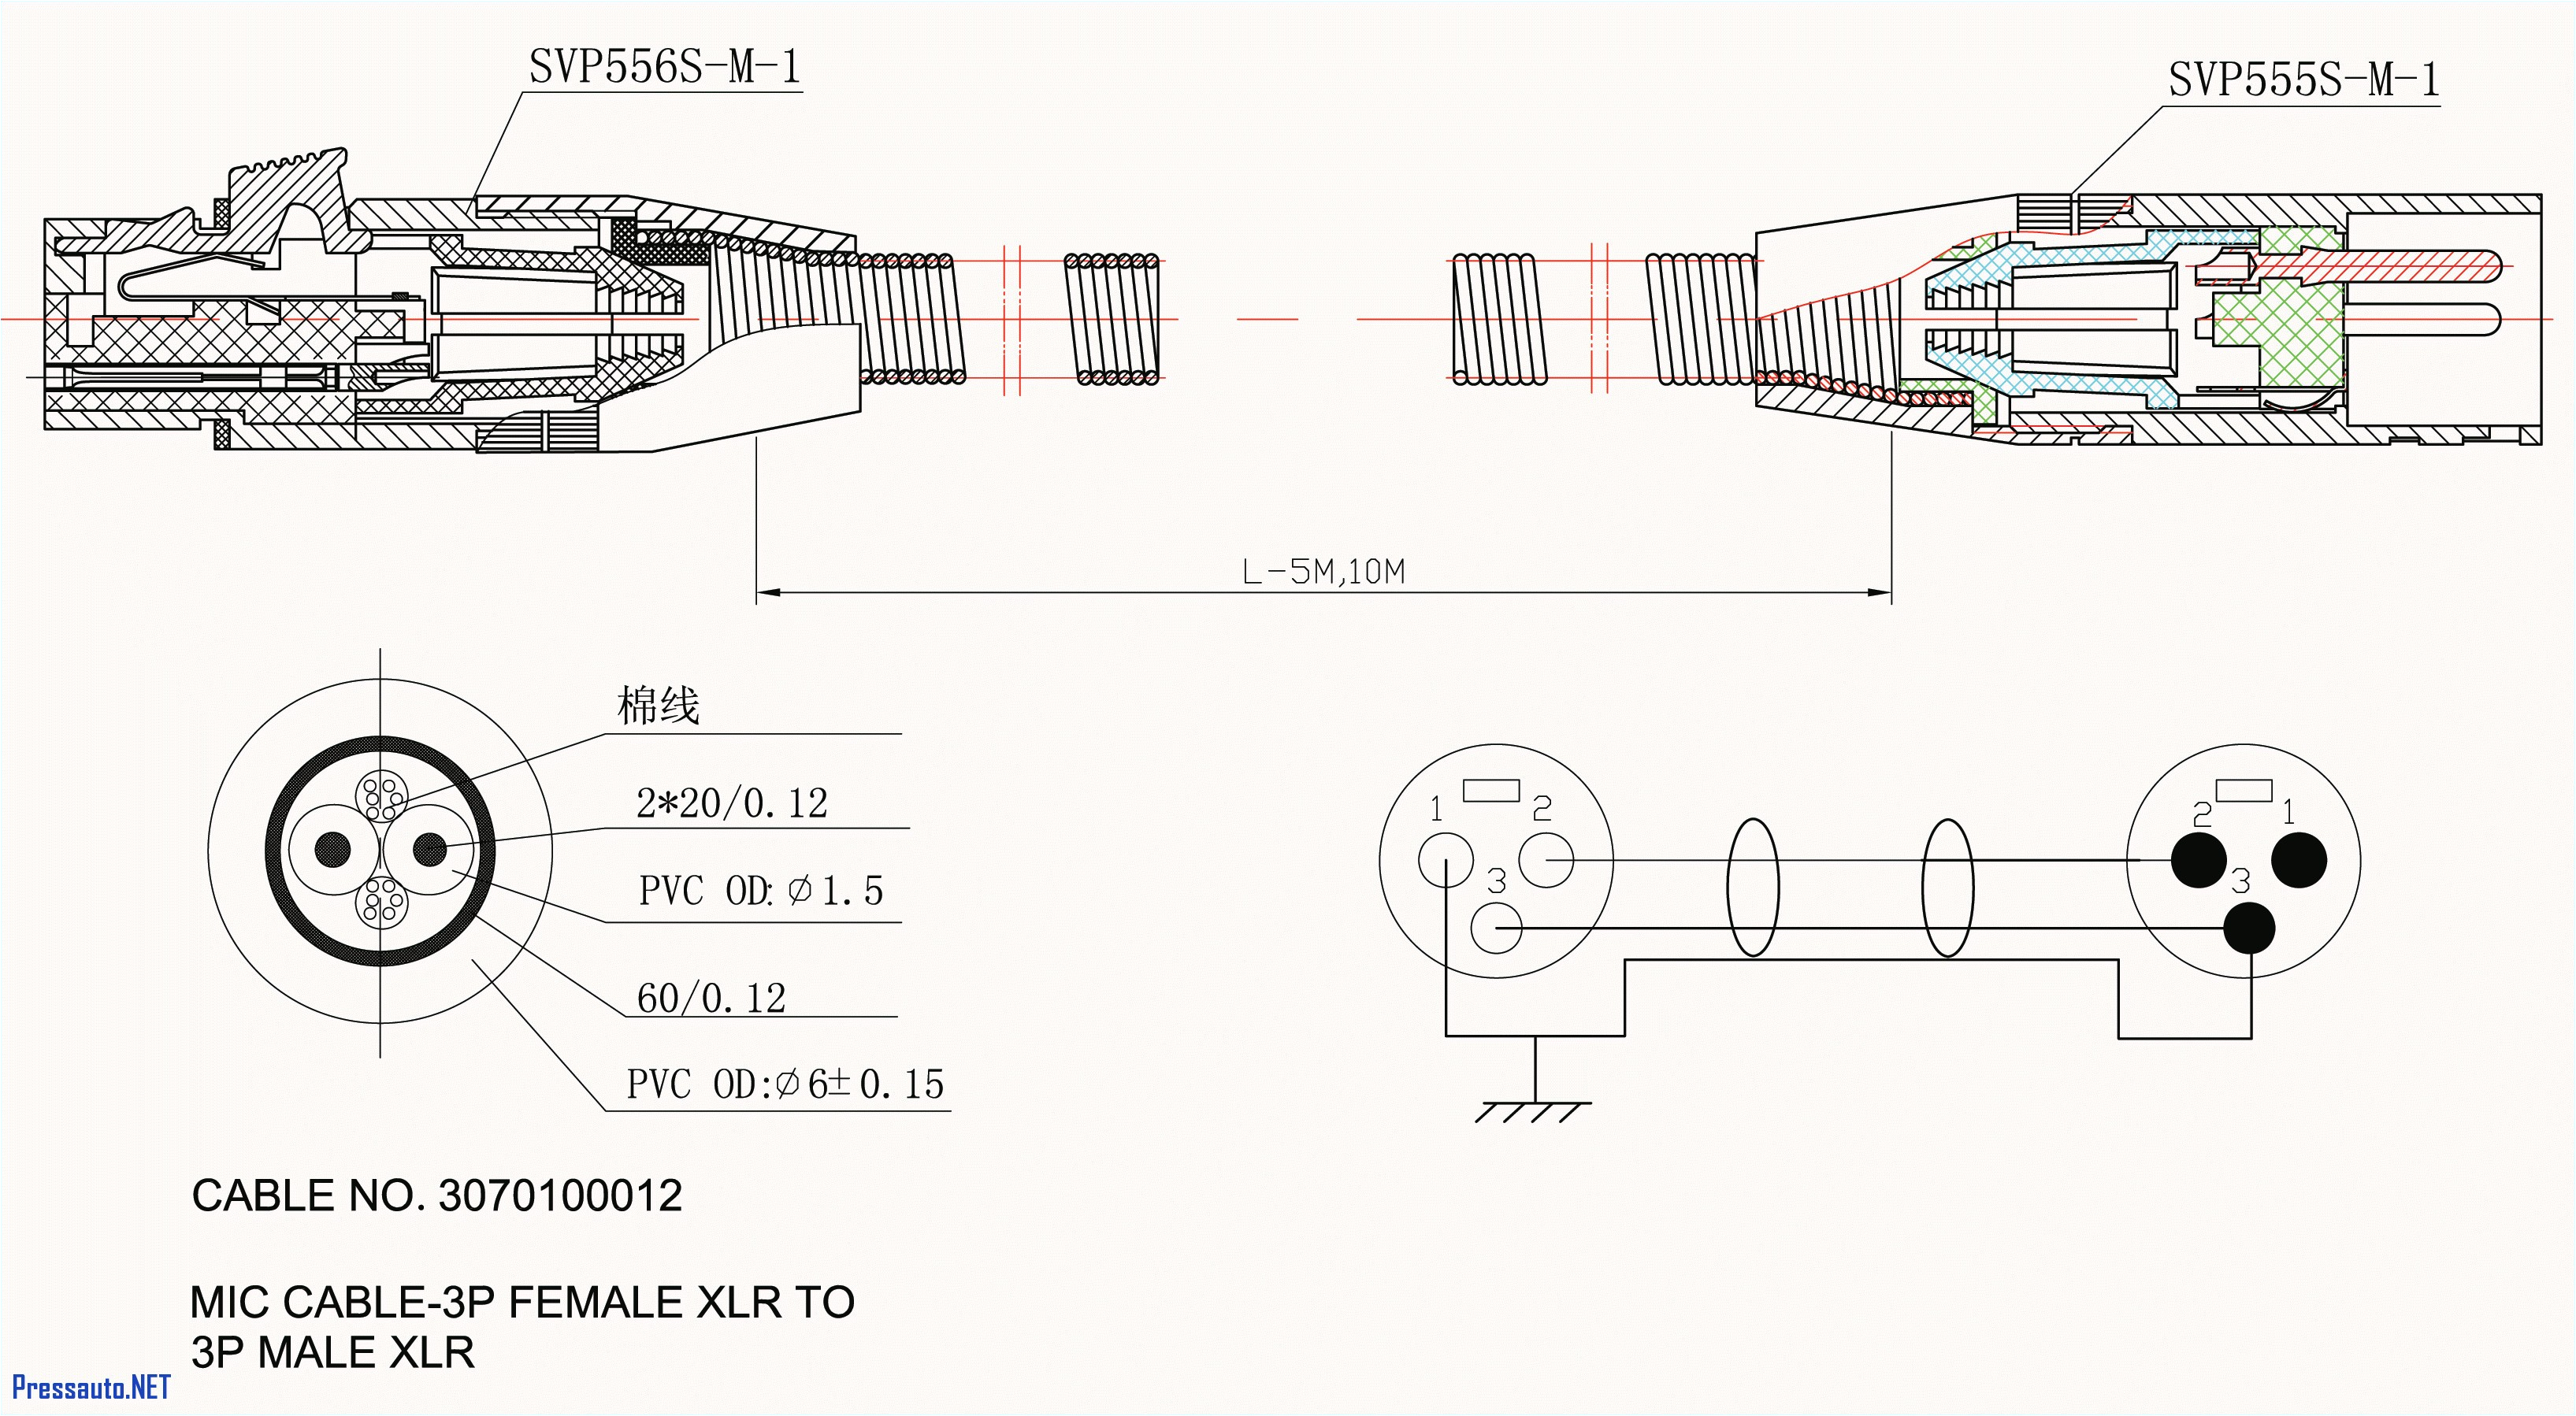 aircraft inter wiring diagram valid aircraft inter wiring diagram refrence microphone wire diagram